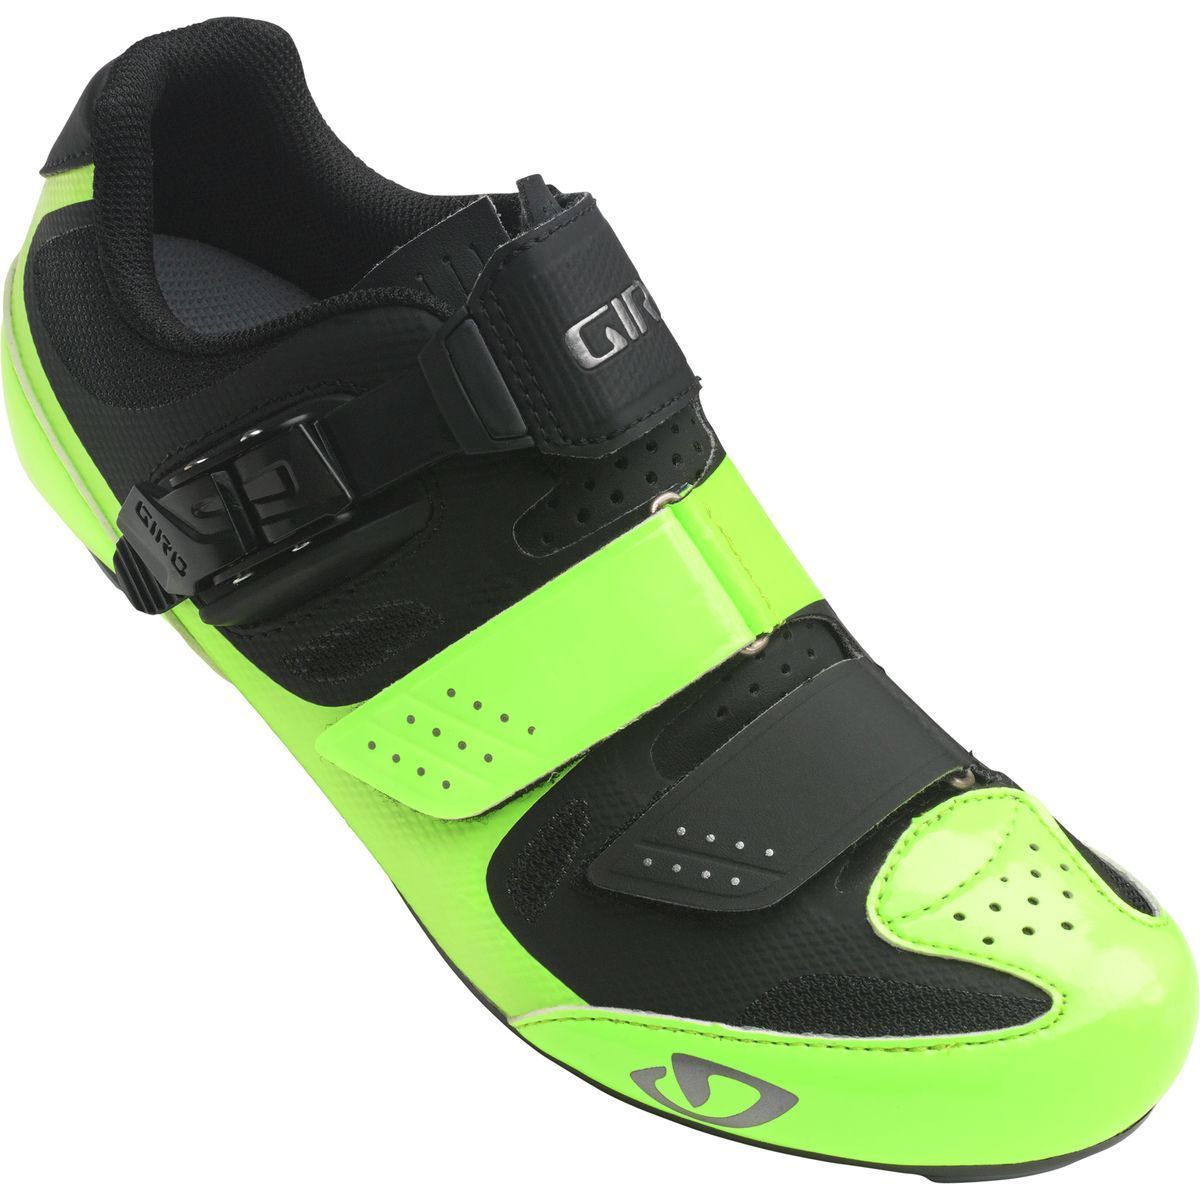 giro women's solara ii cycling shoes